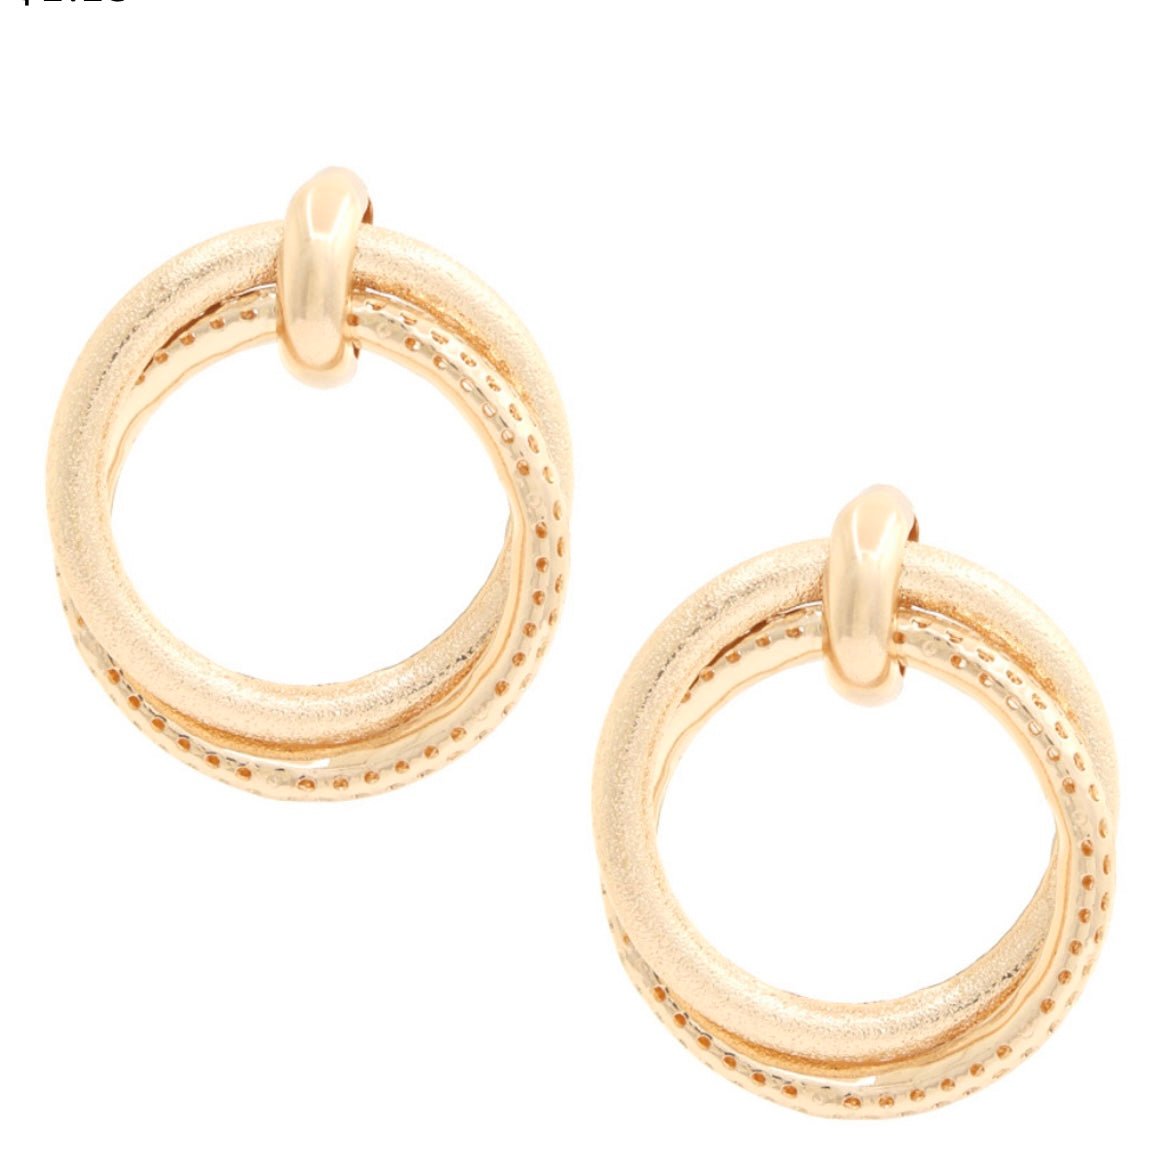 Woven Hoop Earrings in Gold